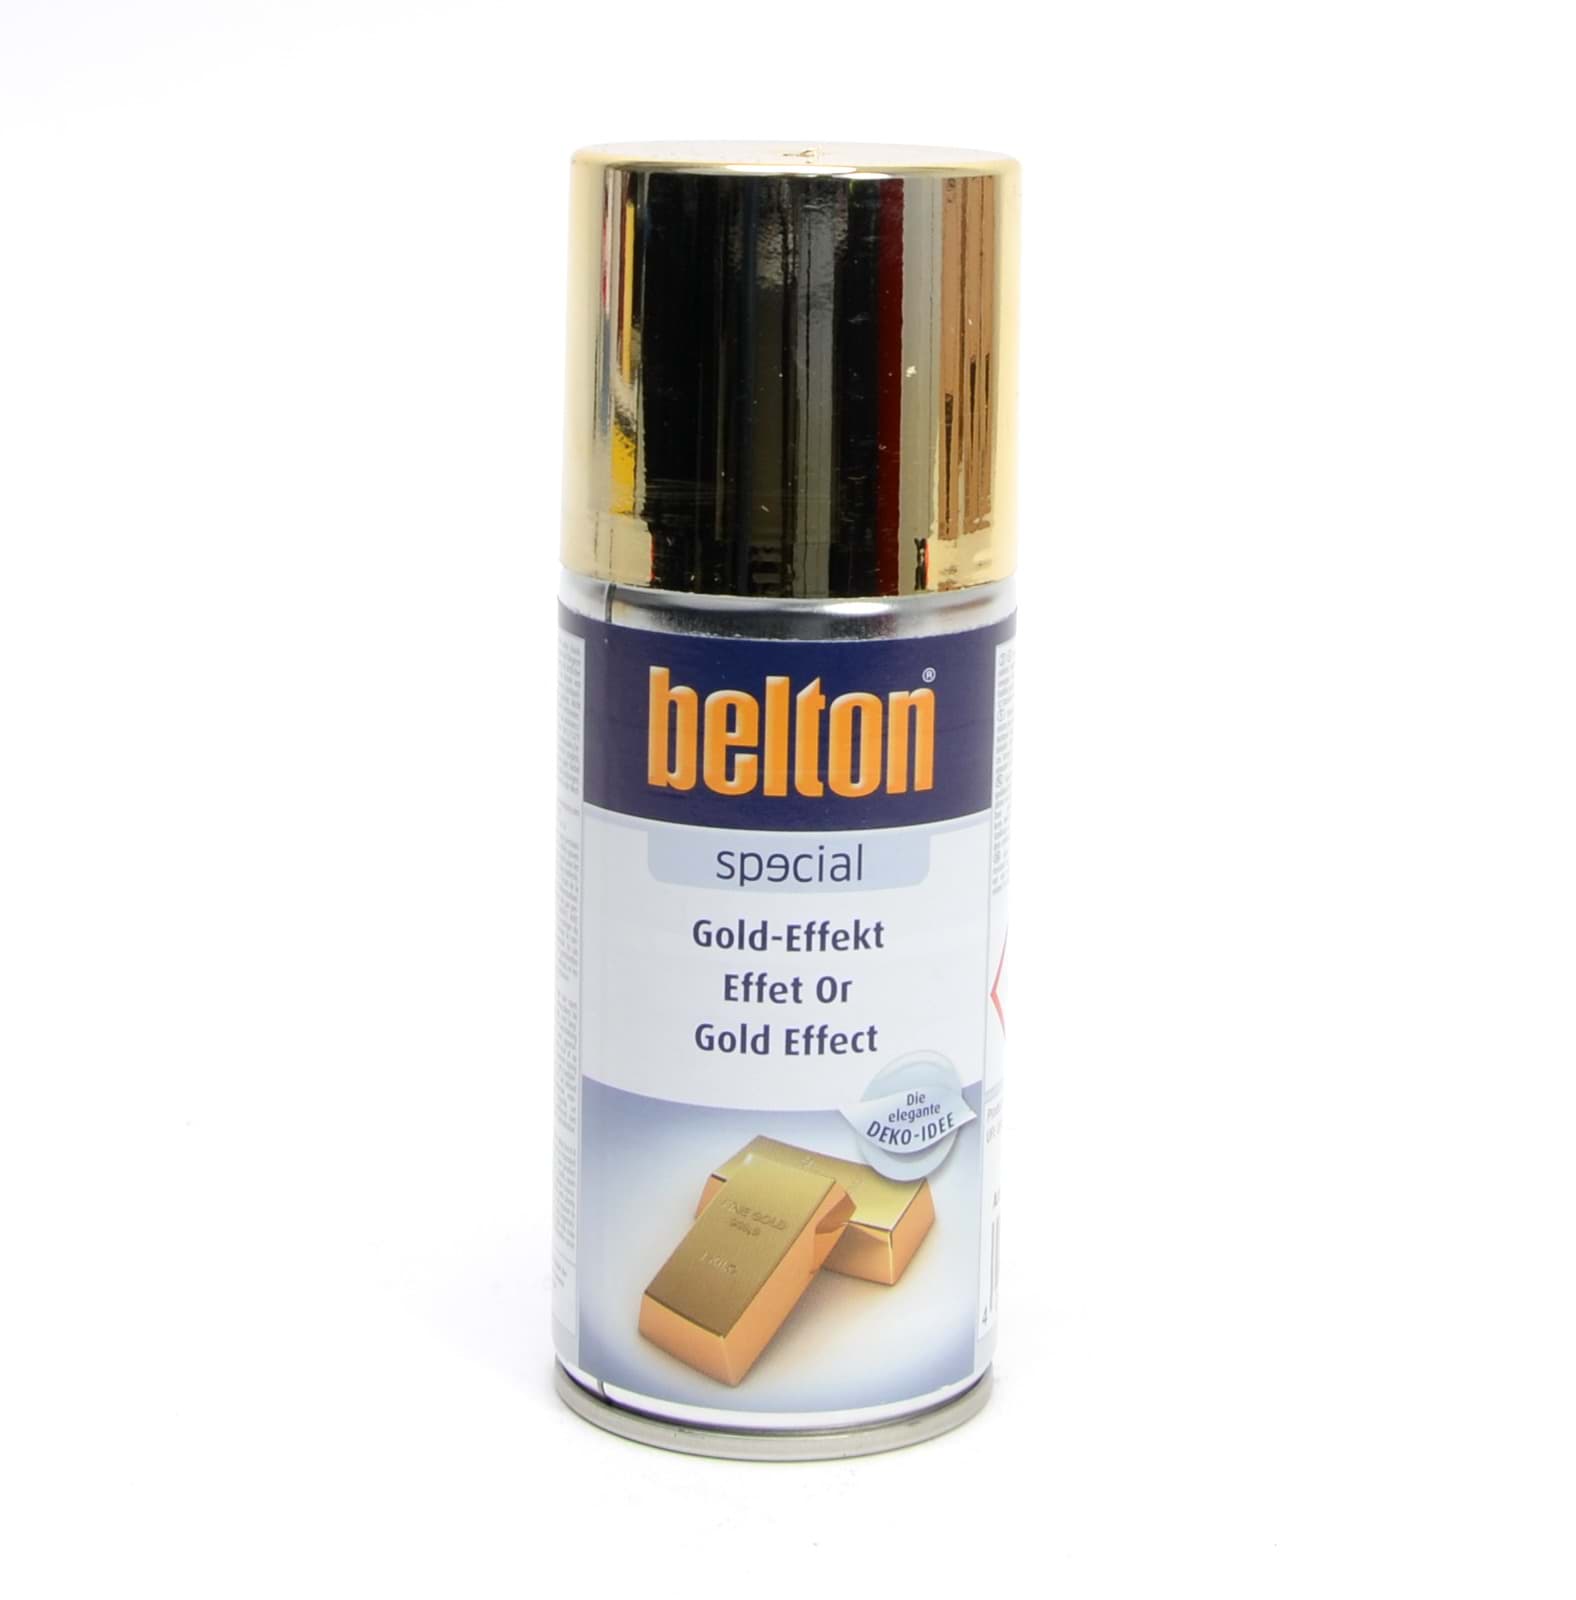 Belton SPECIAL GOLD-EFFEKT 150ml resmi